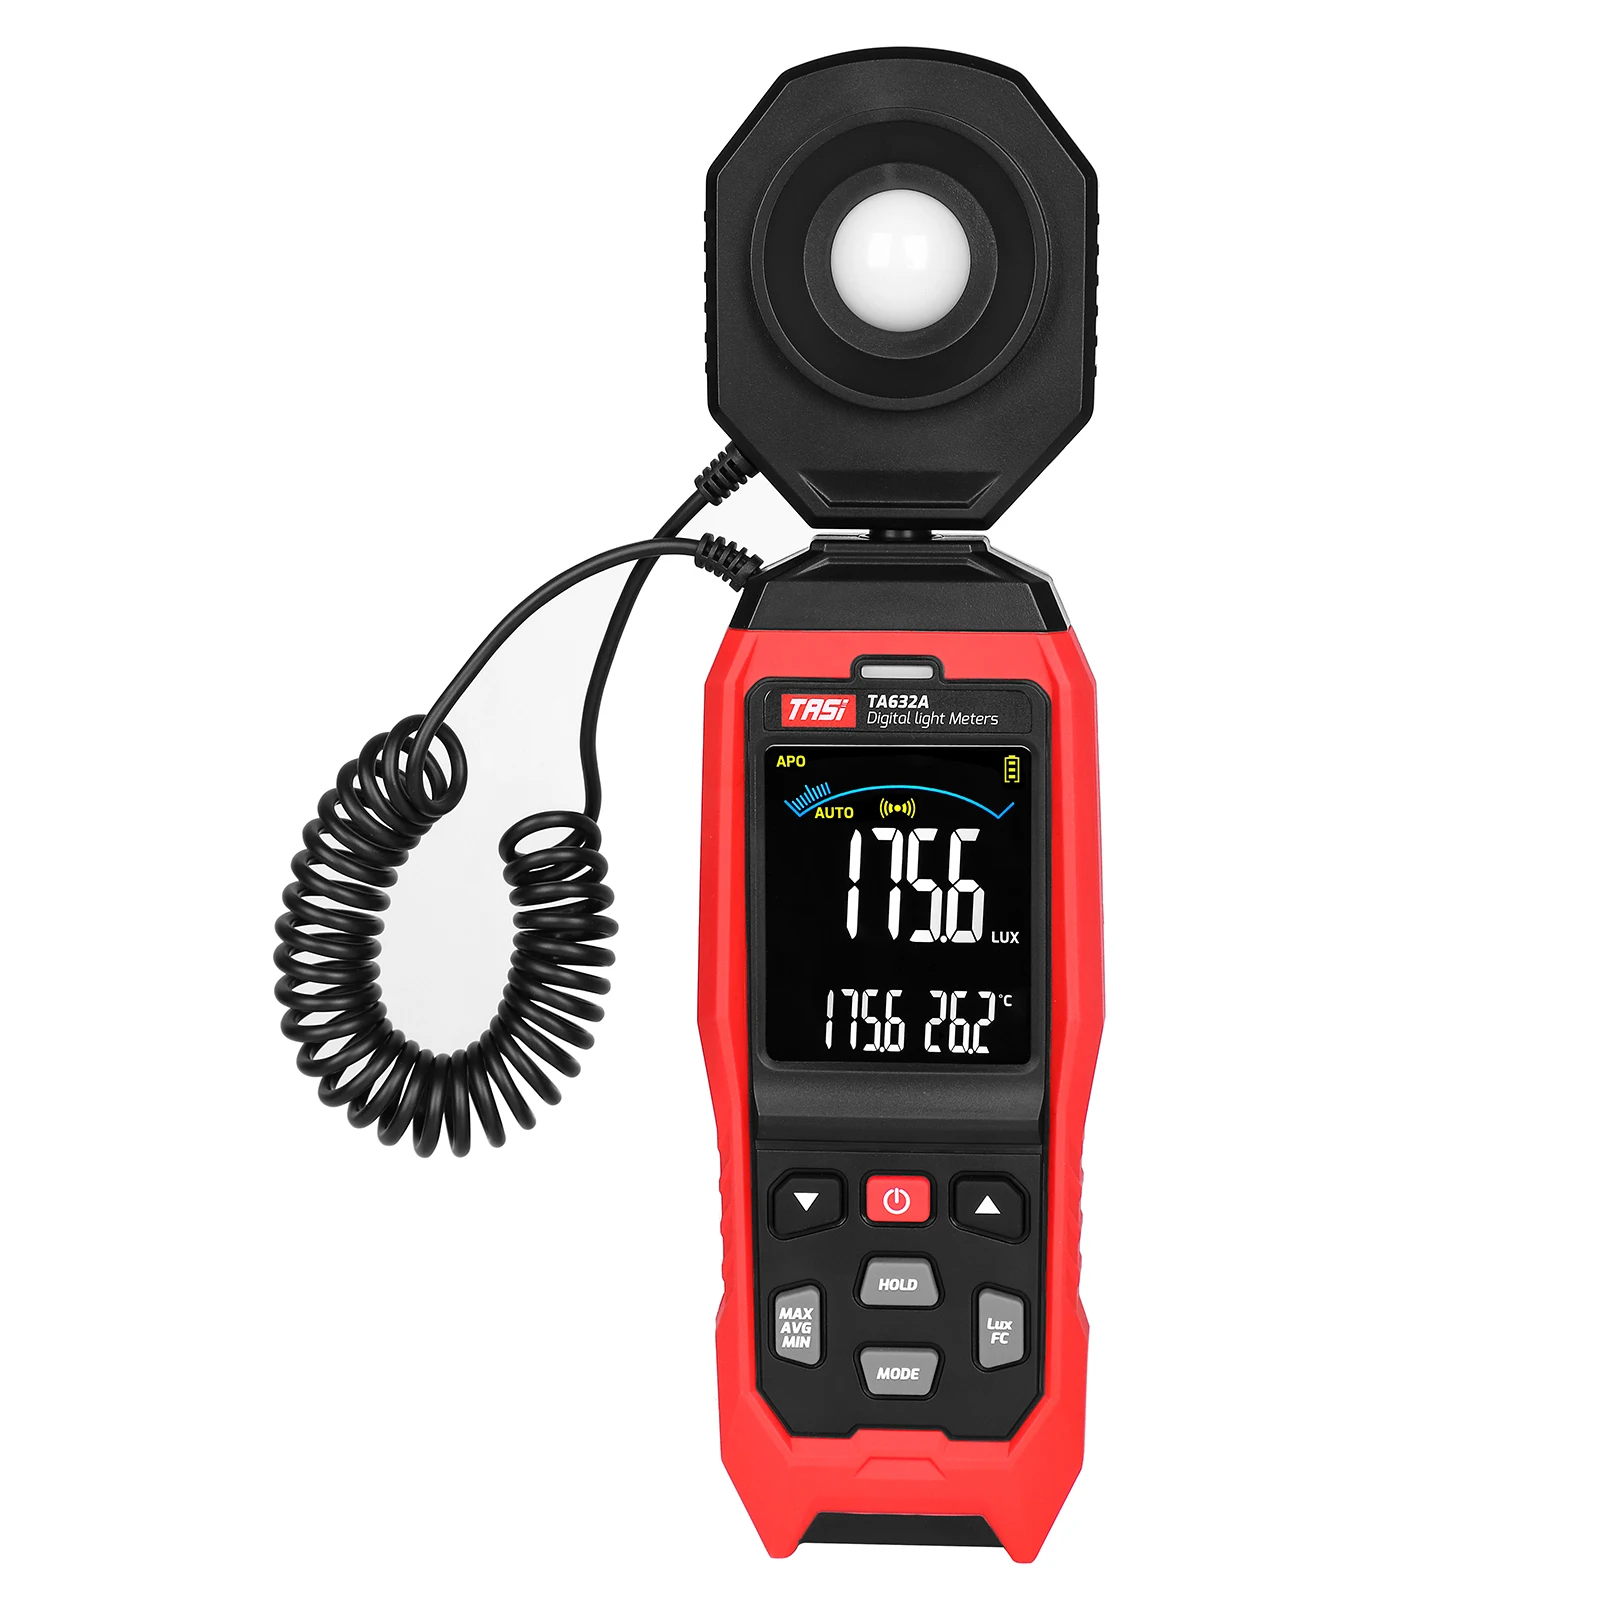 

Цифровой измеритель освещения TASI TA632A, ручной мини-измеритель люкс с ЖК дисплеем и подсветкой, фотометр, измеритель люкс